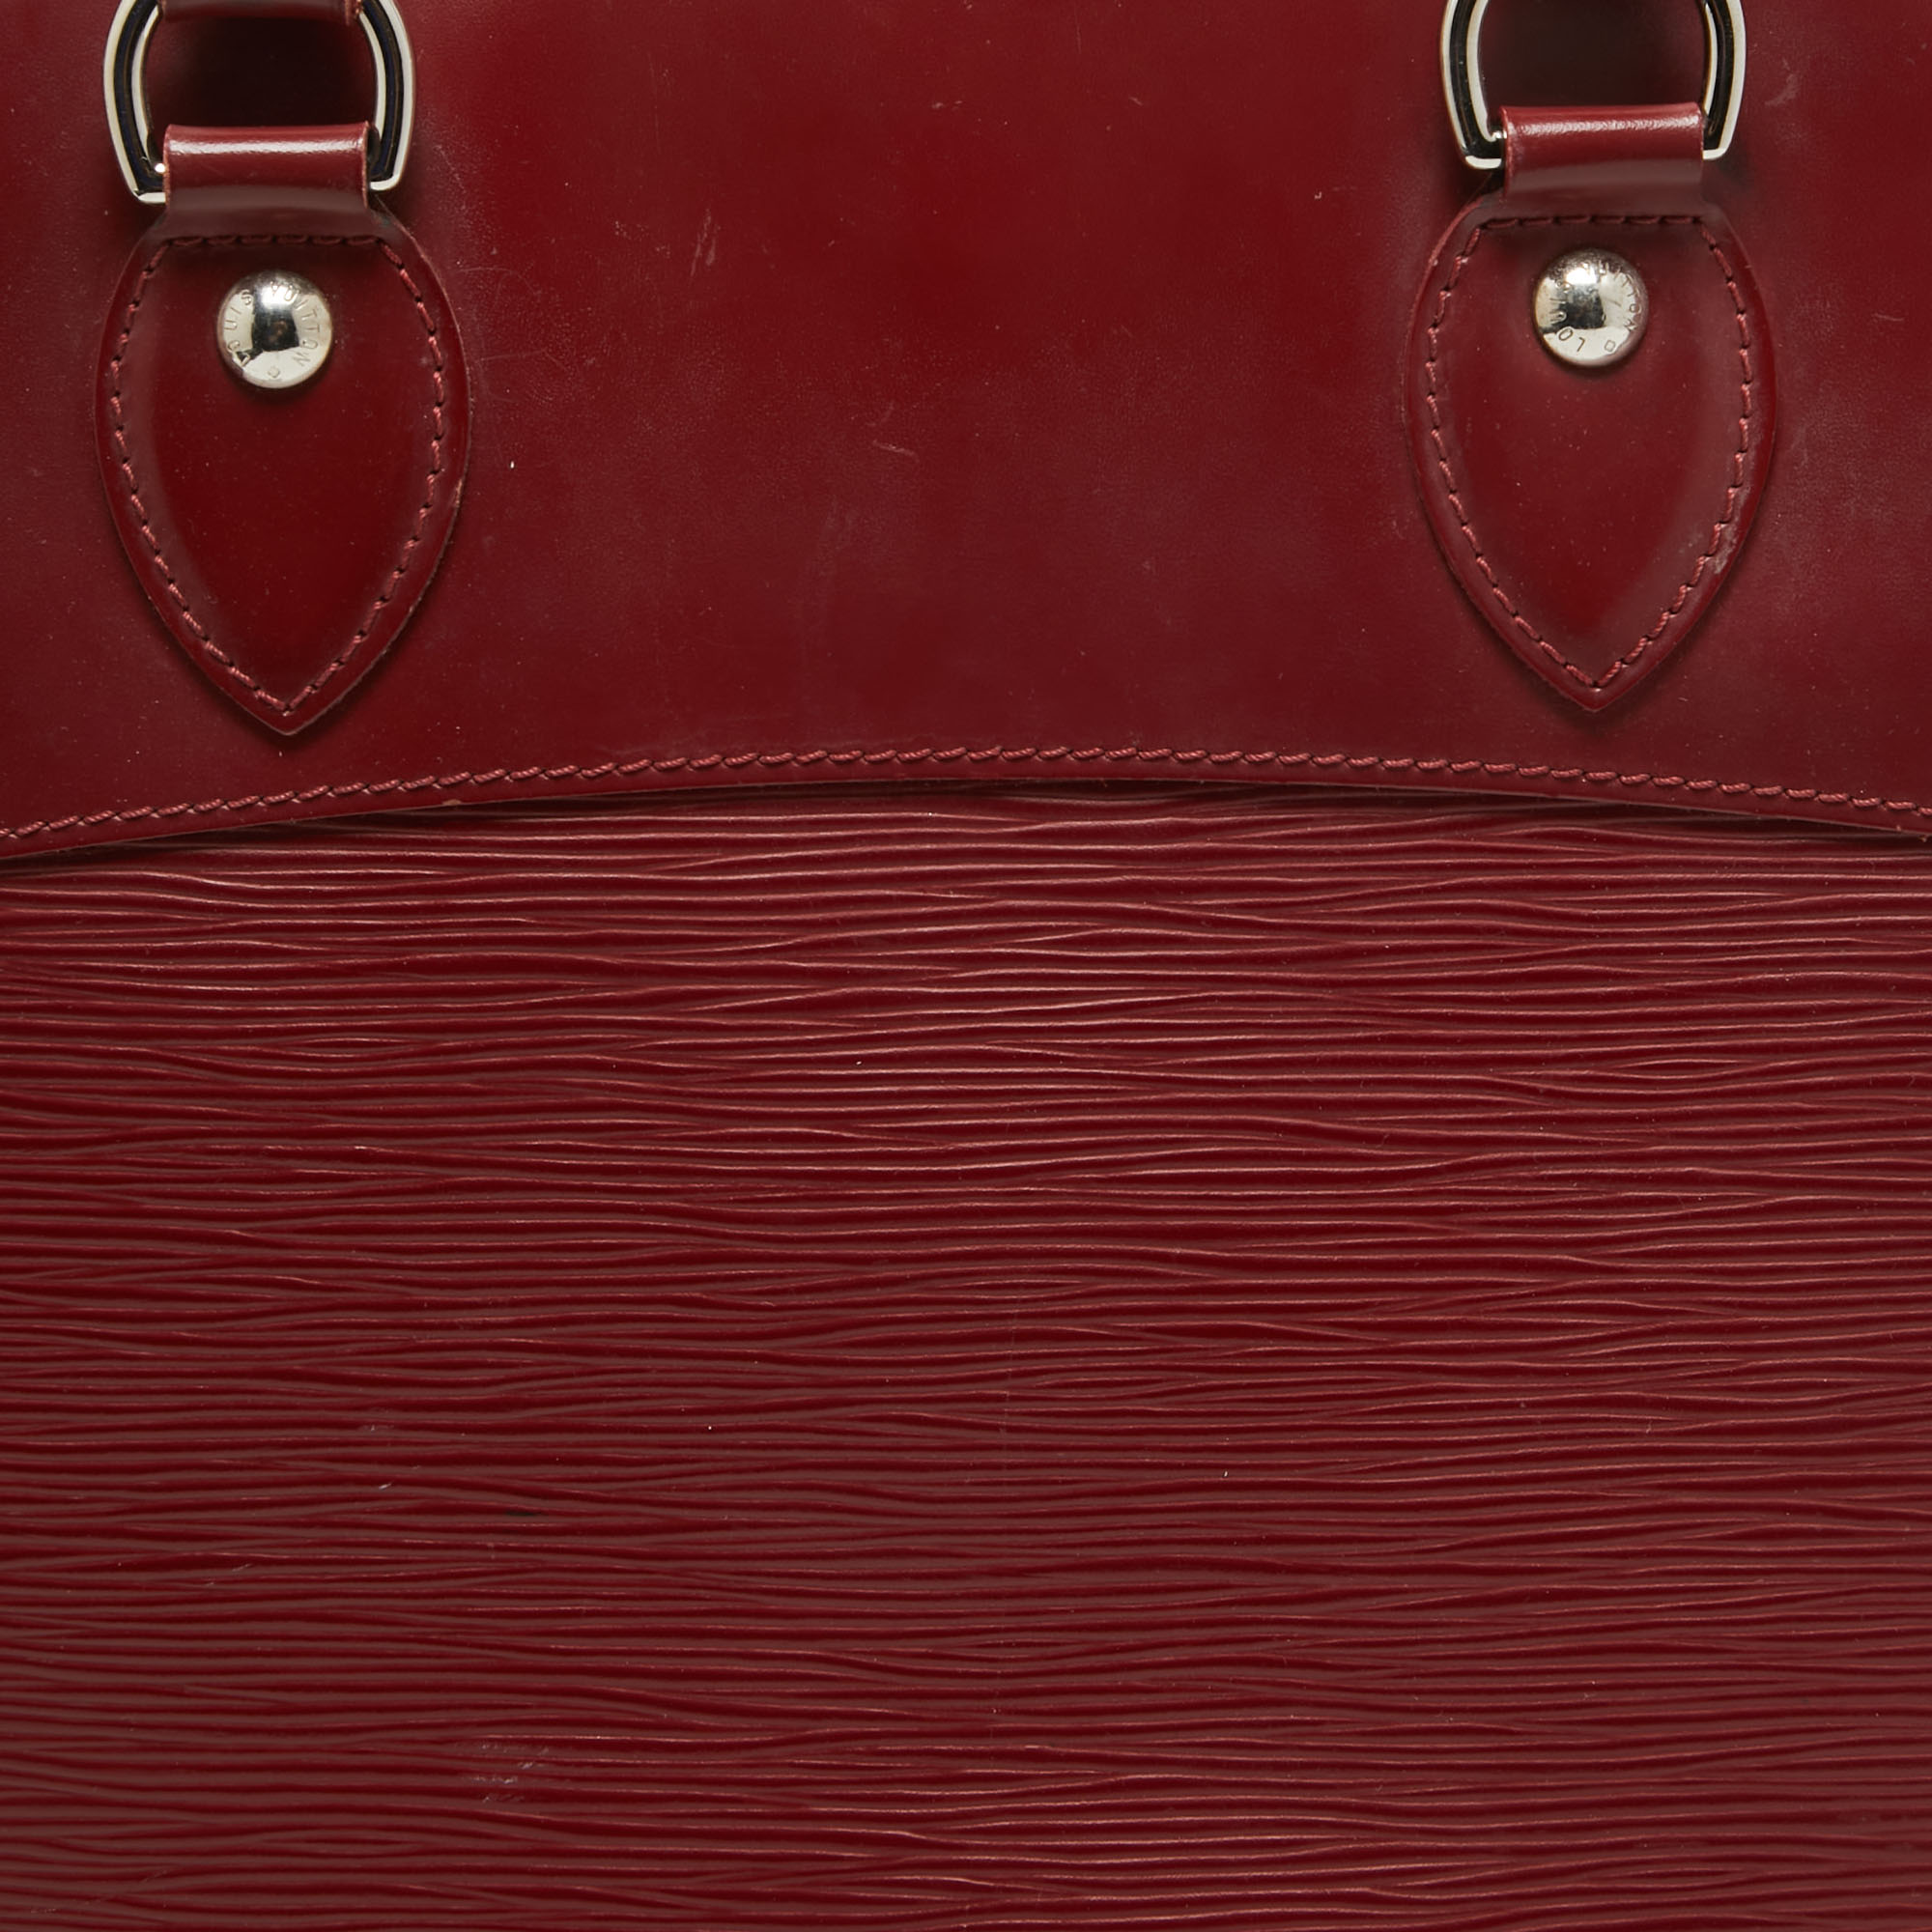 Louis Vuitton Rubis Epi Leather Passy PM Bag